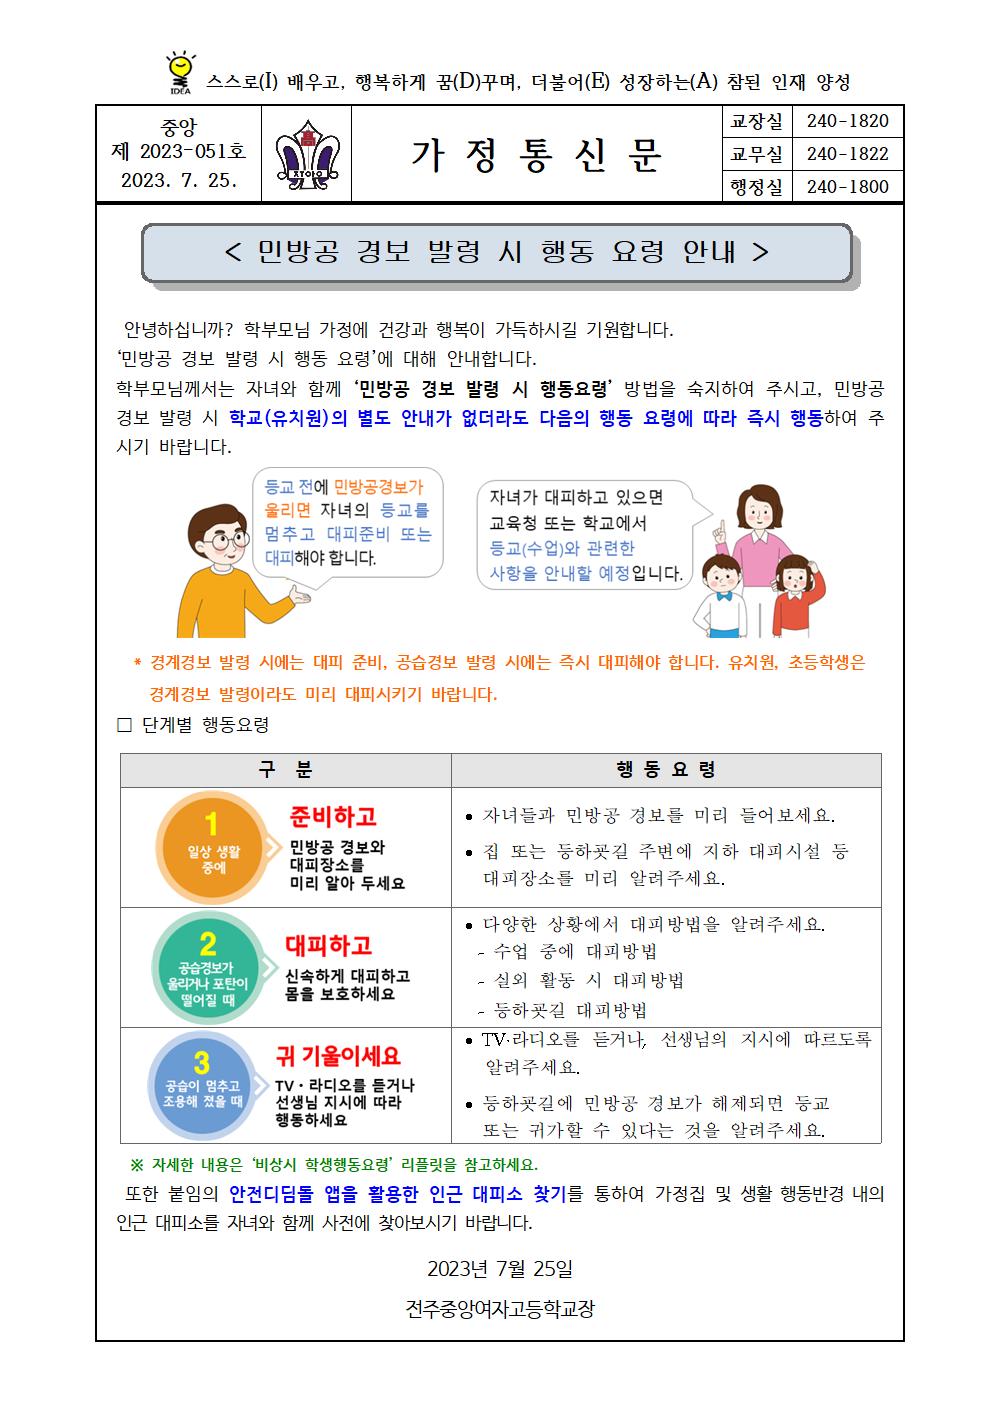 7. 민방공 경보 발령 시 행동요령 안내 가정통신문001